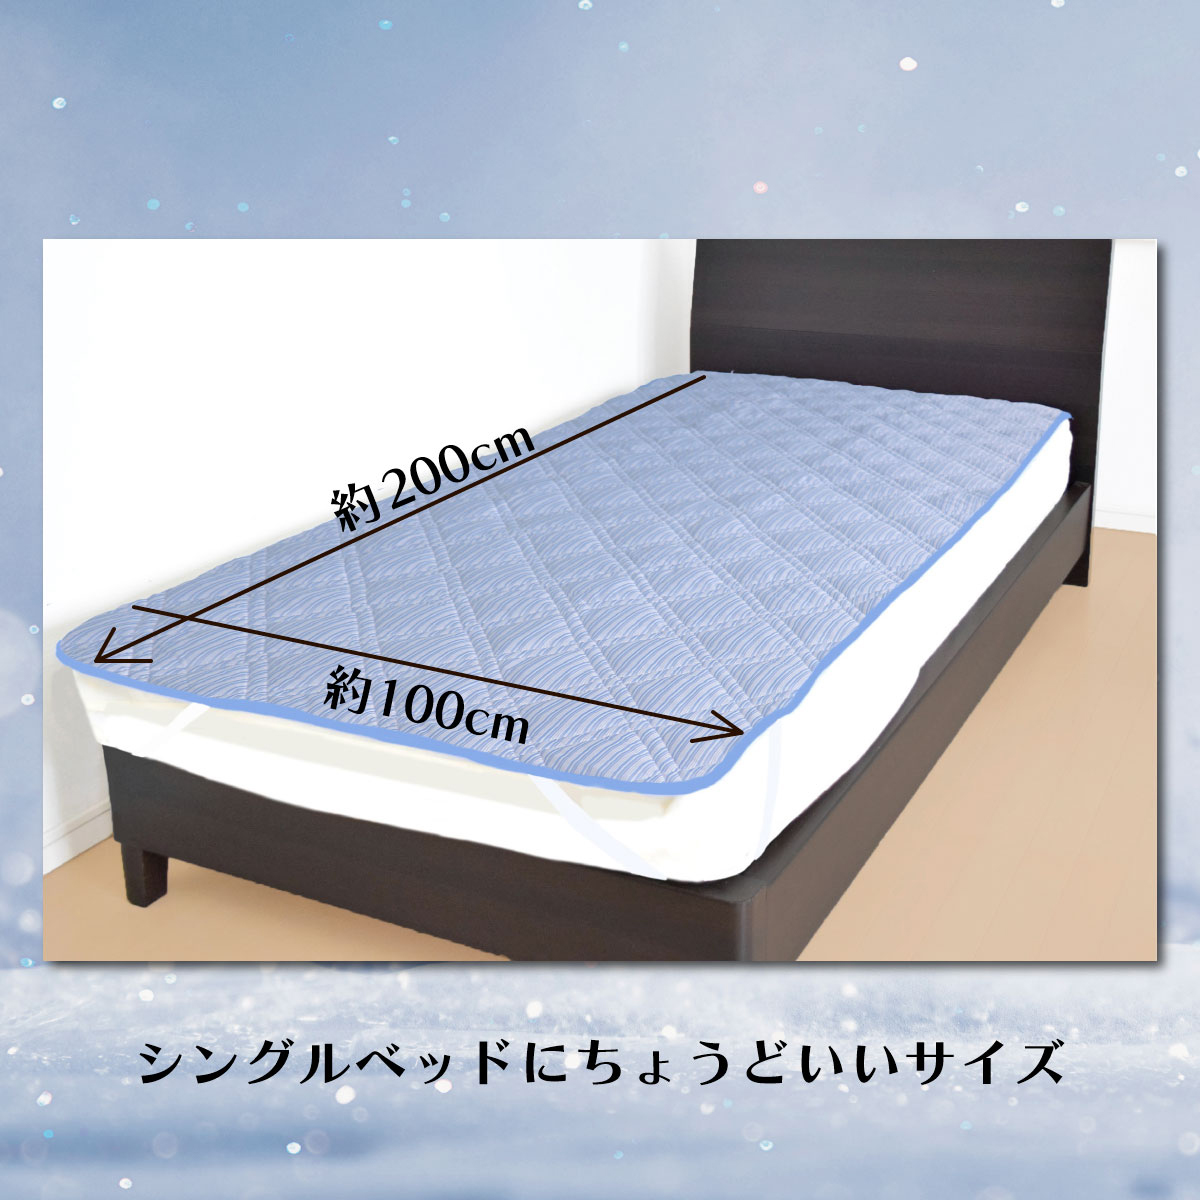 シングルベッドにちょうどよい大きさである写真を載せたストライプネイビーのバナー画像